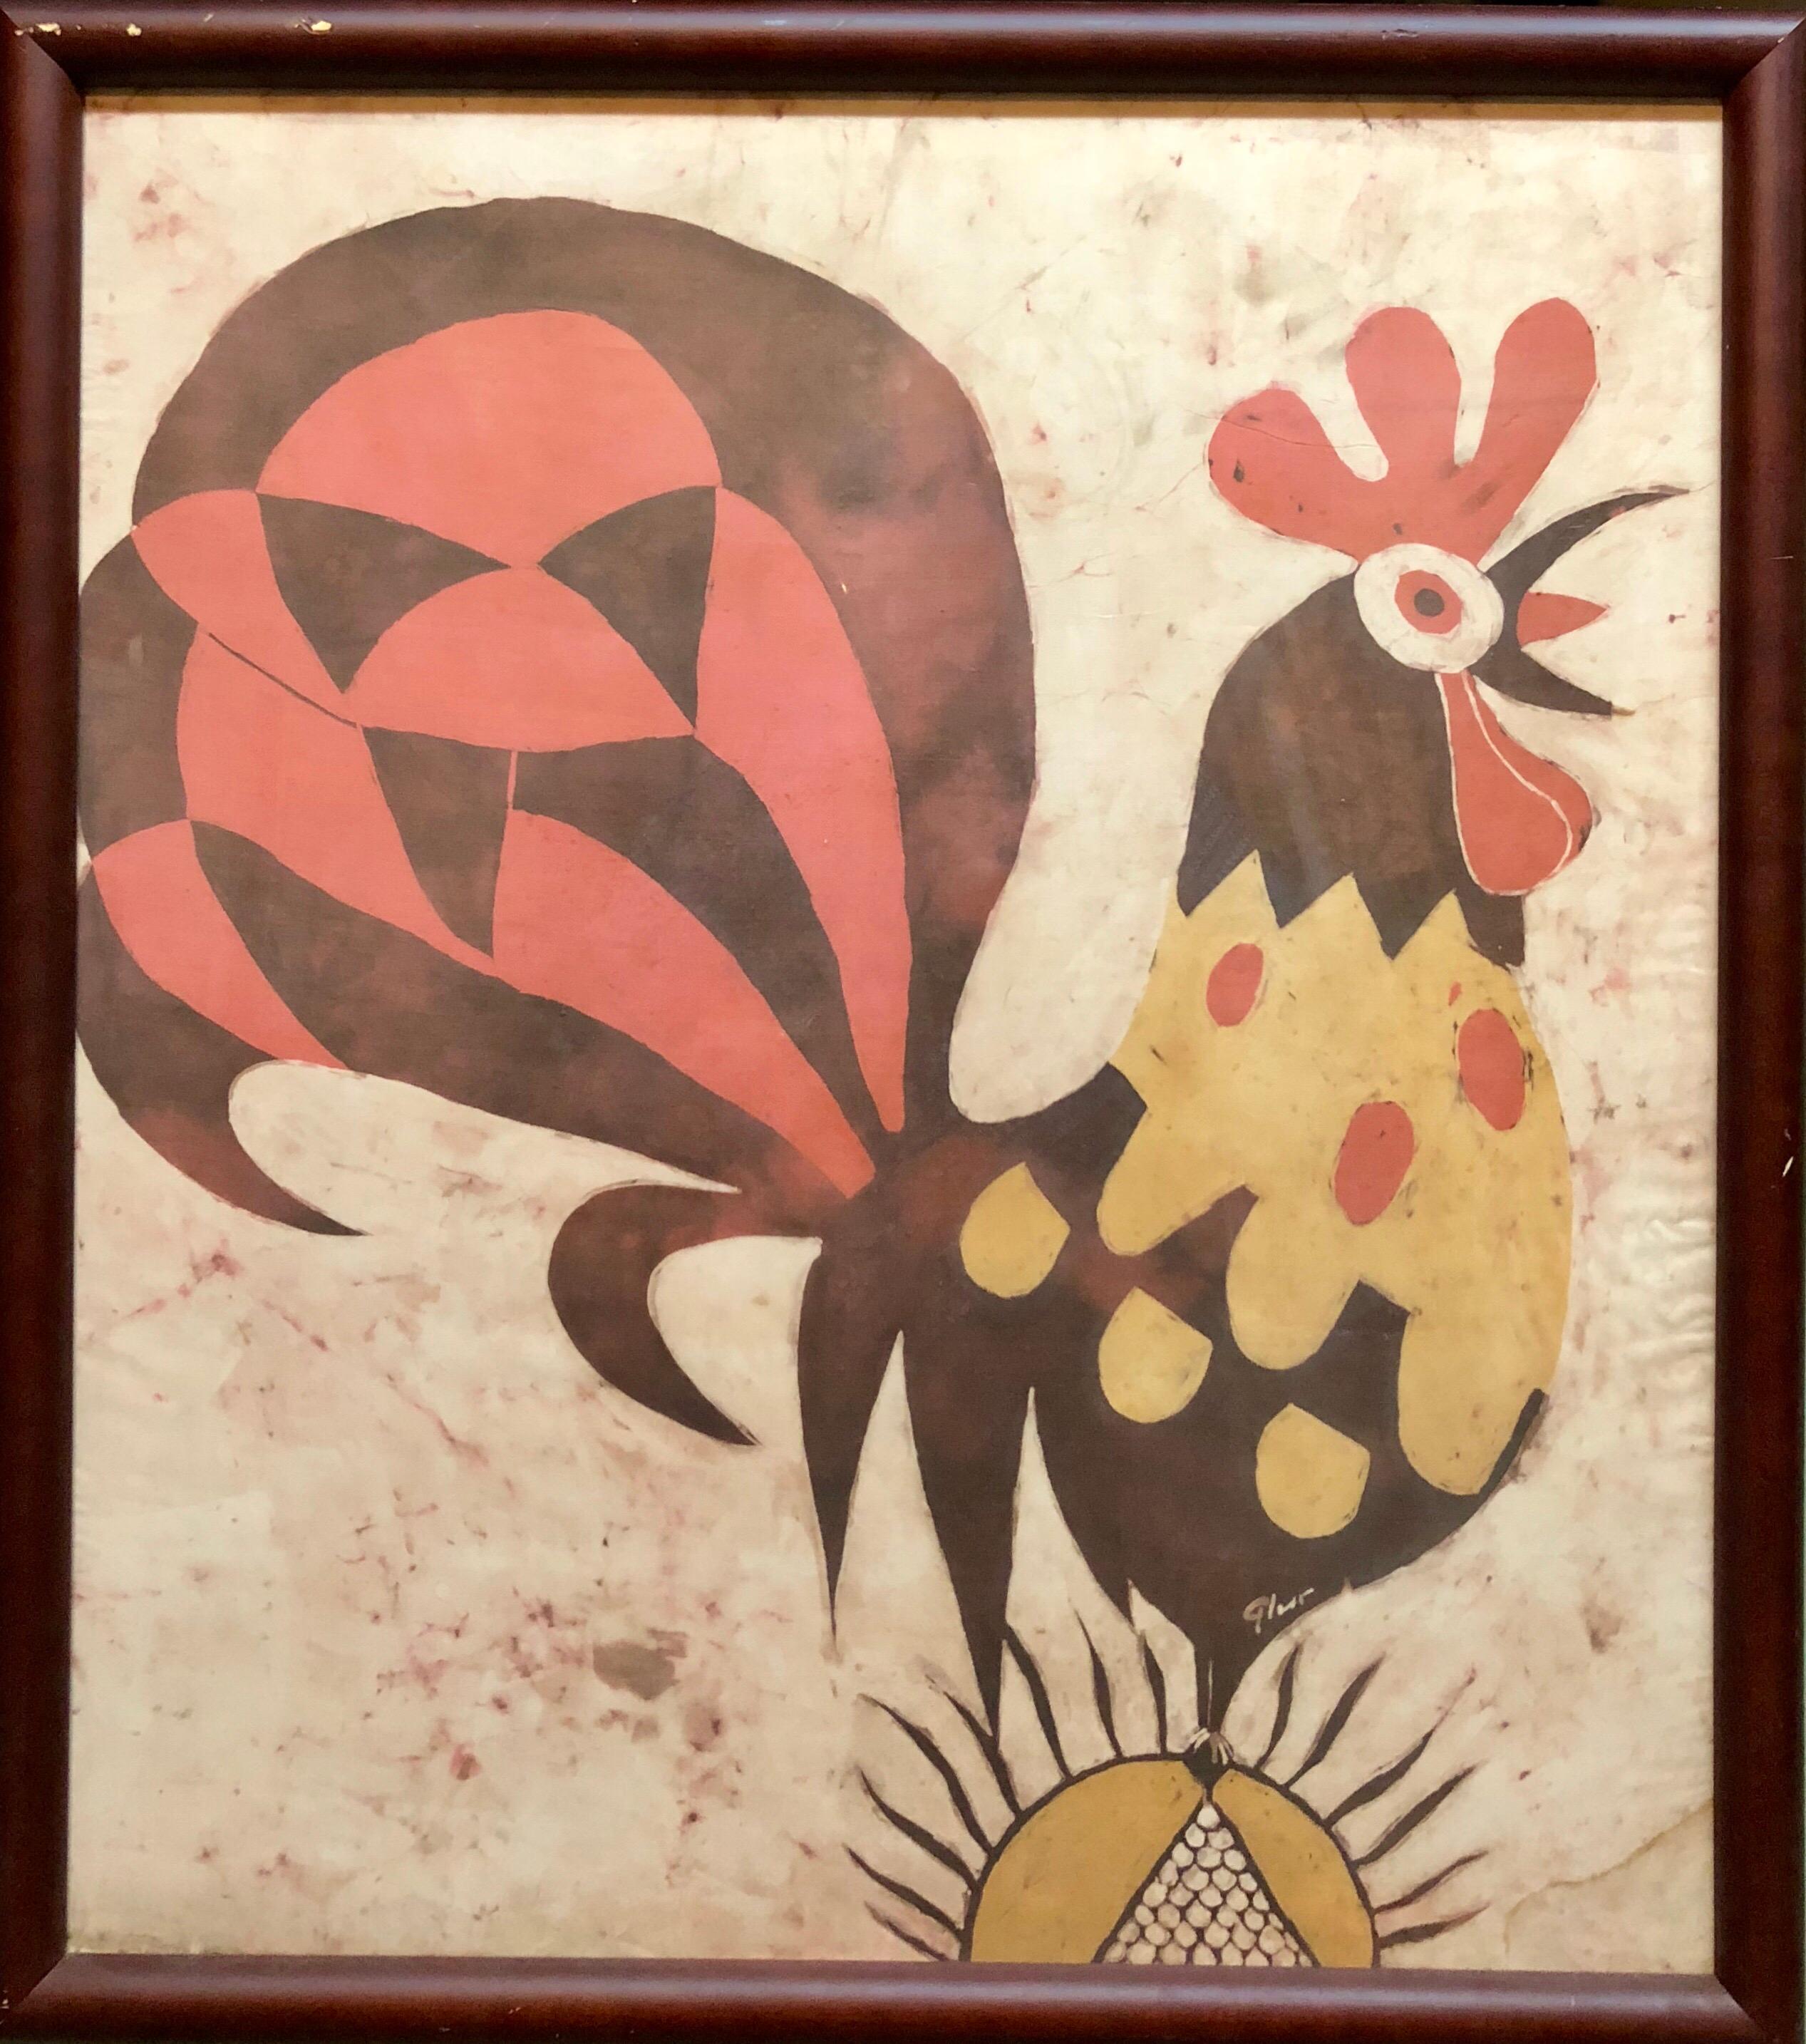 Deutscher israelischer expressionistischer „Rooster“ Gemäldedruck im Batik-Stil auf Seidenstoff – Mixed Media Art von Jacob Pins